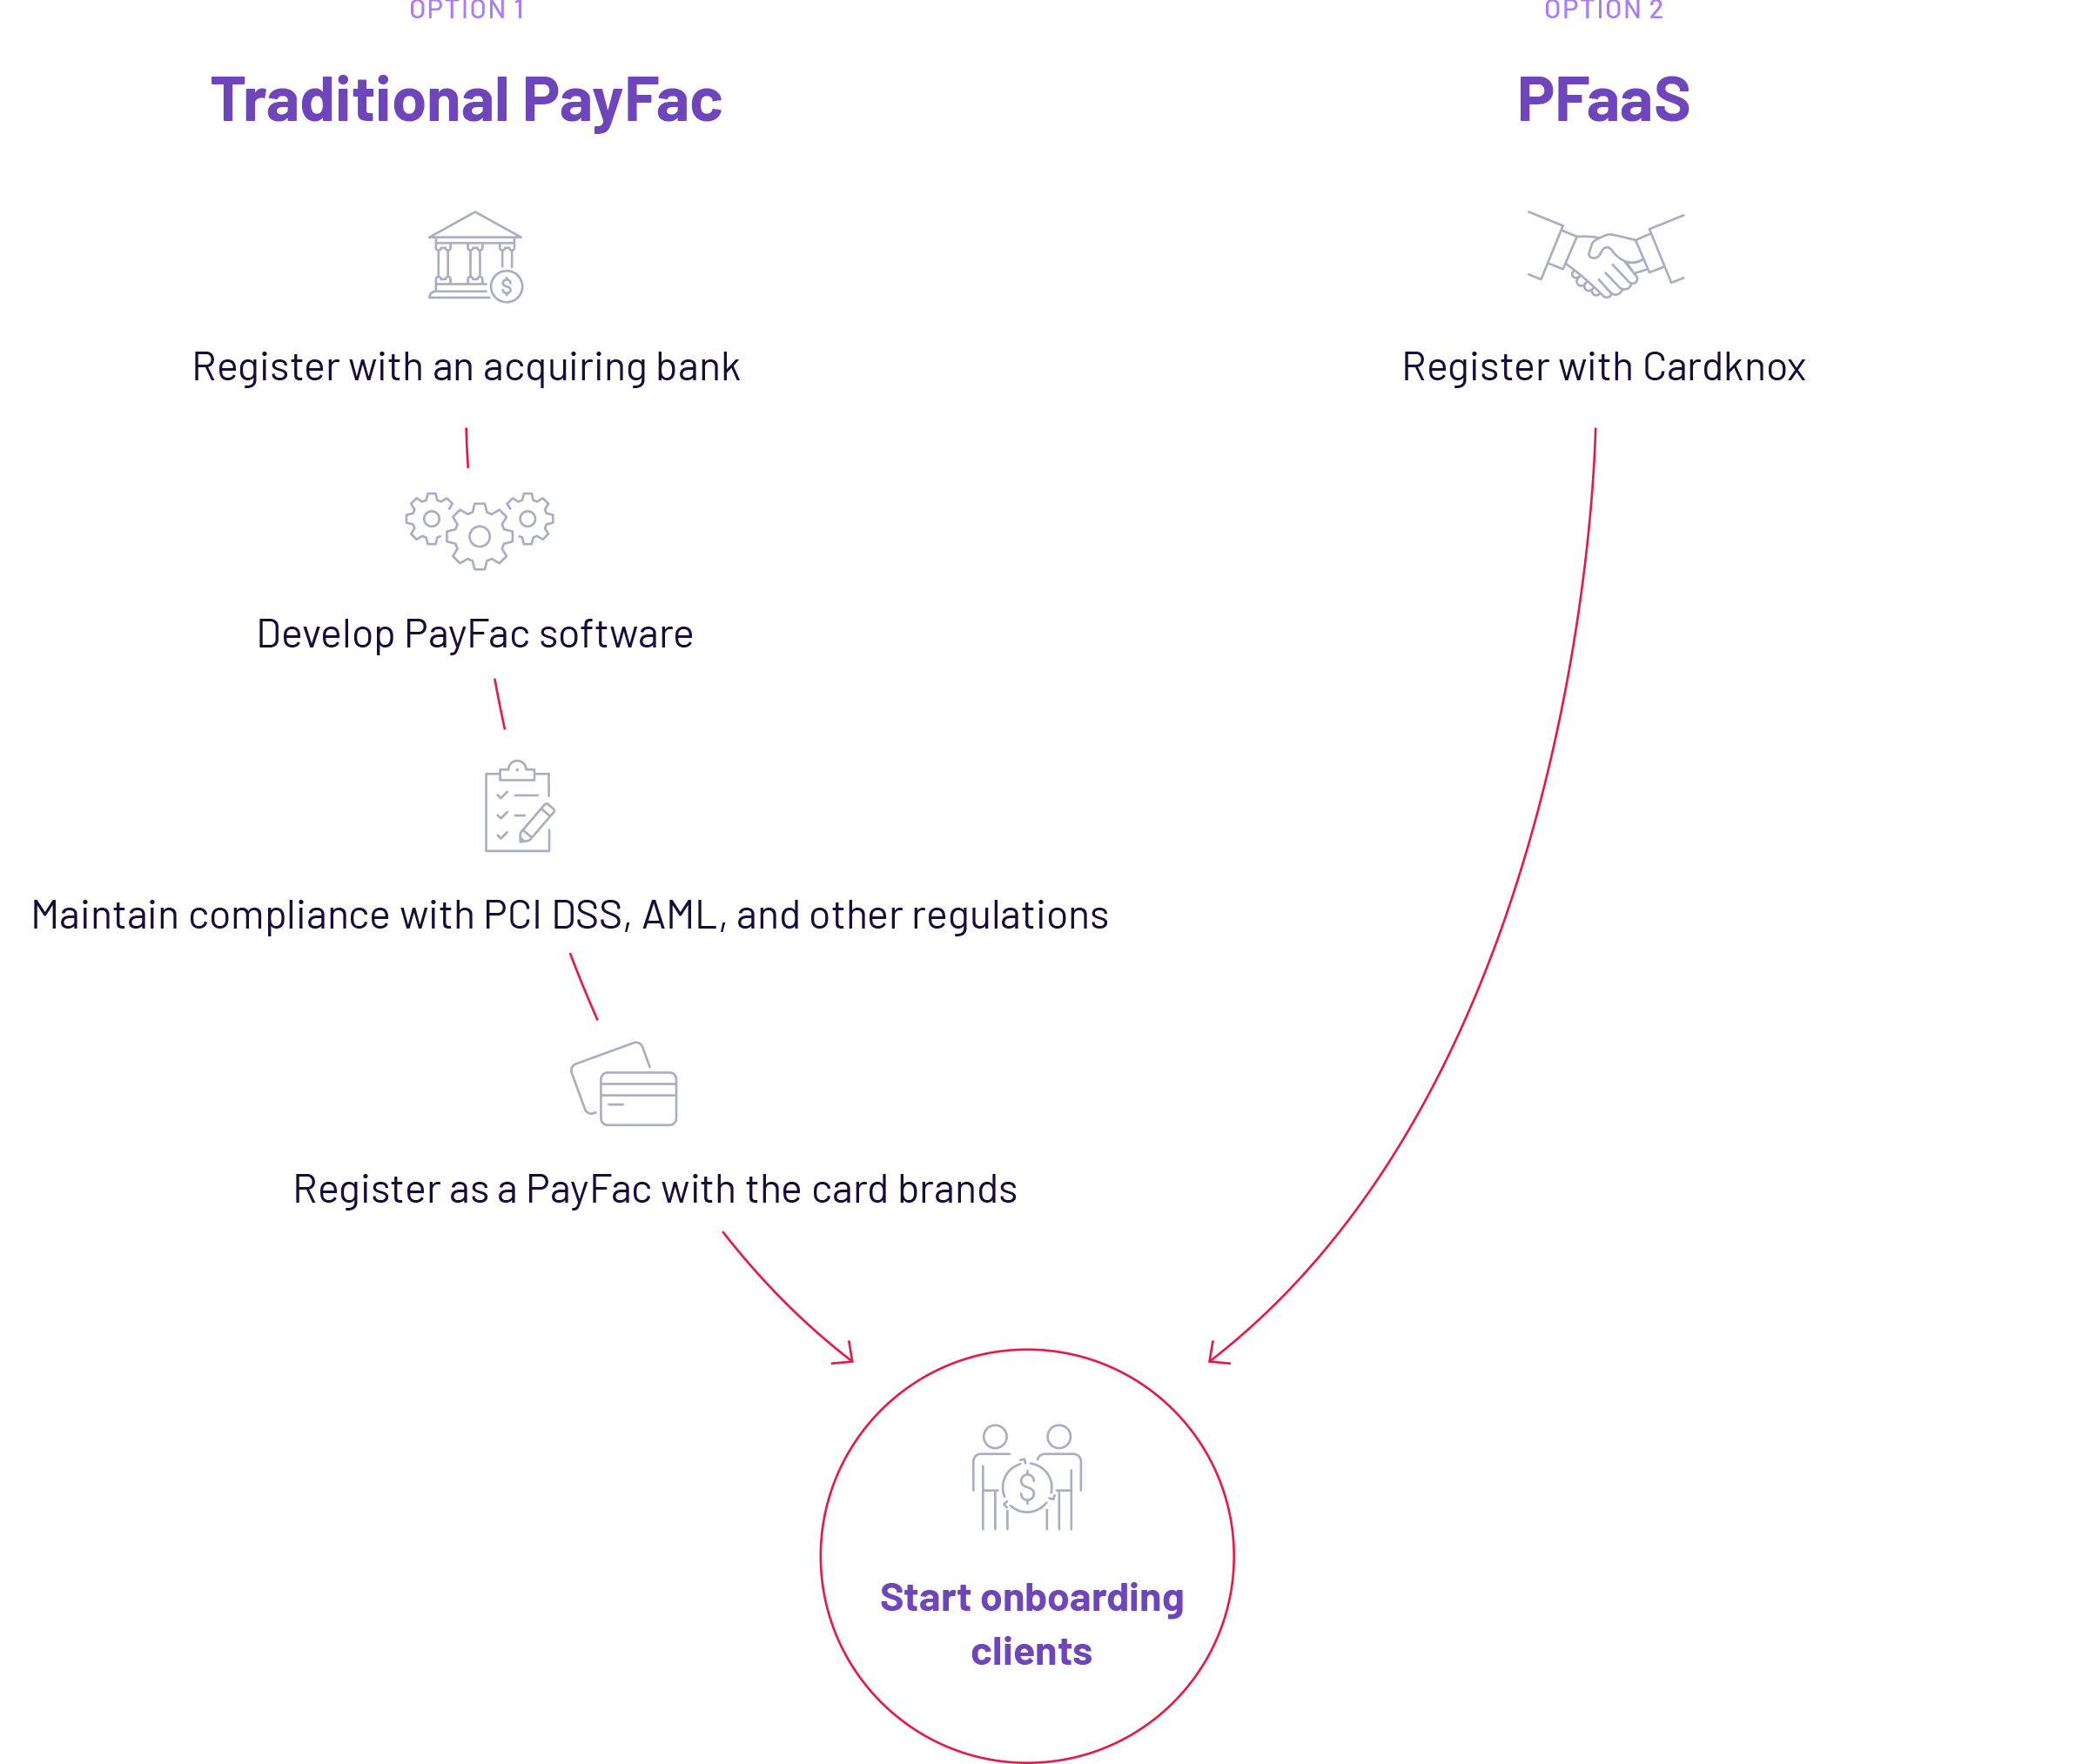 CardKnox-PayFac Infographic-trad vs pfaas